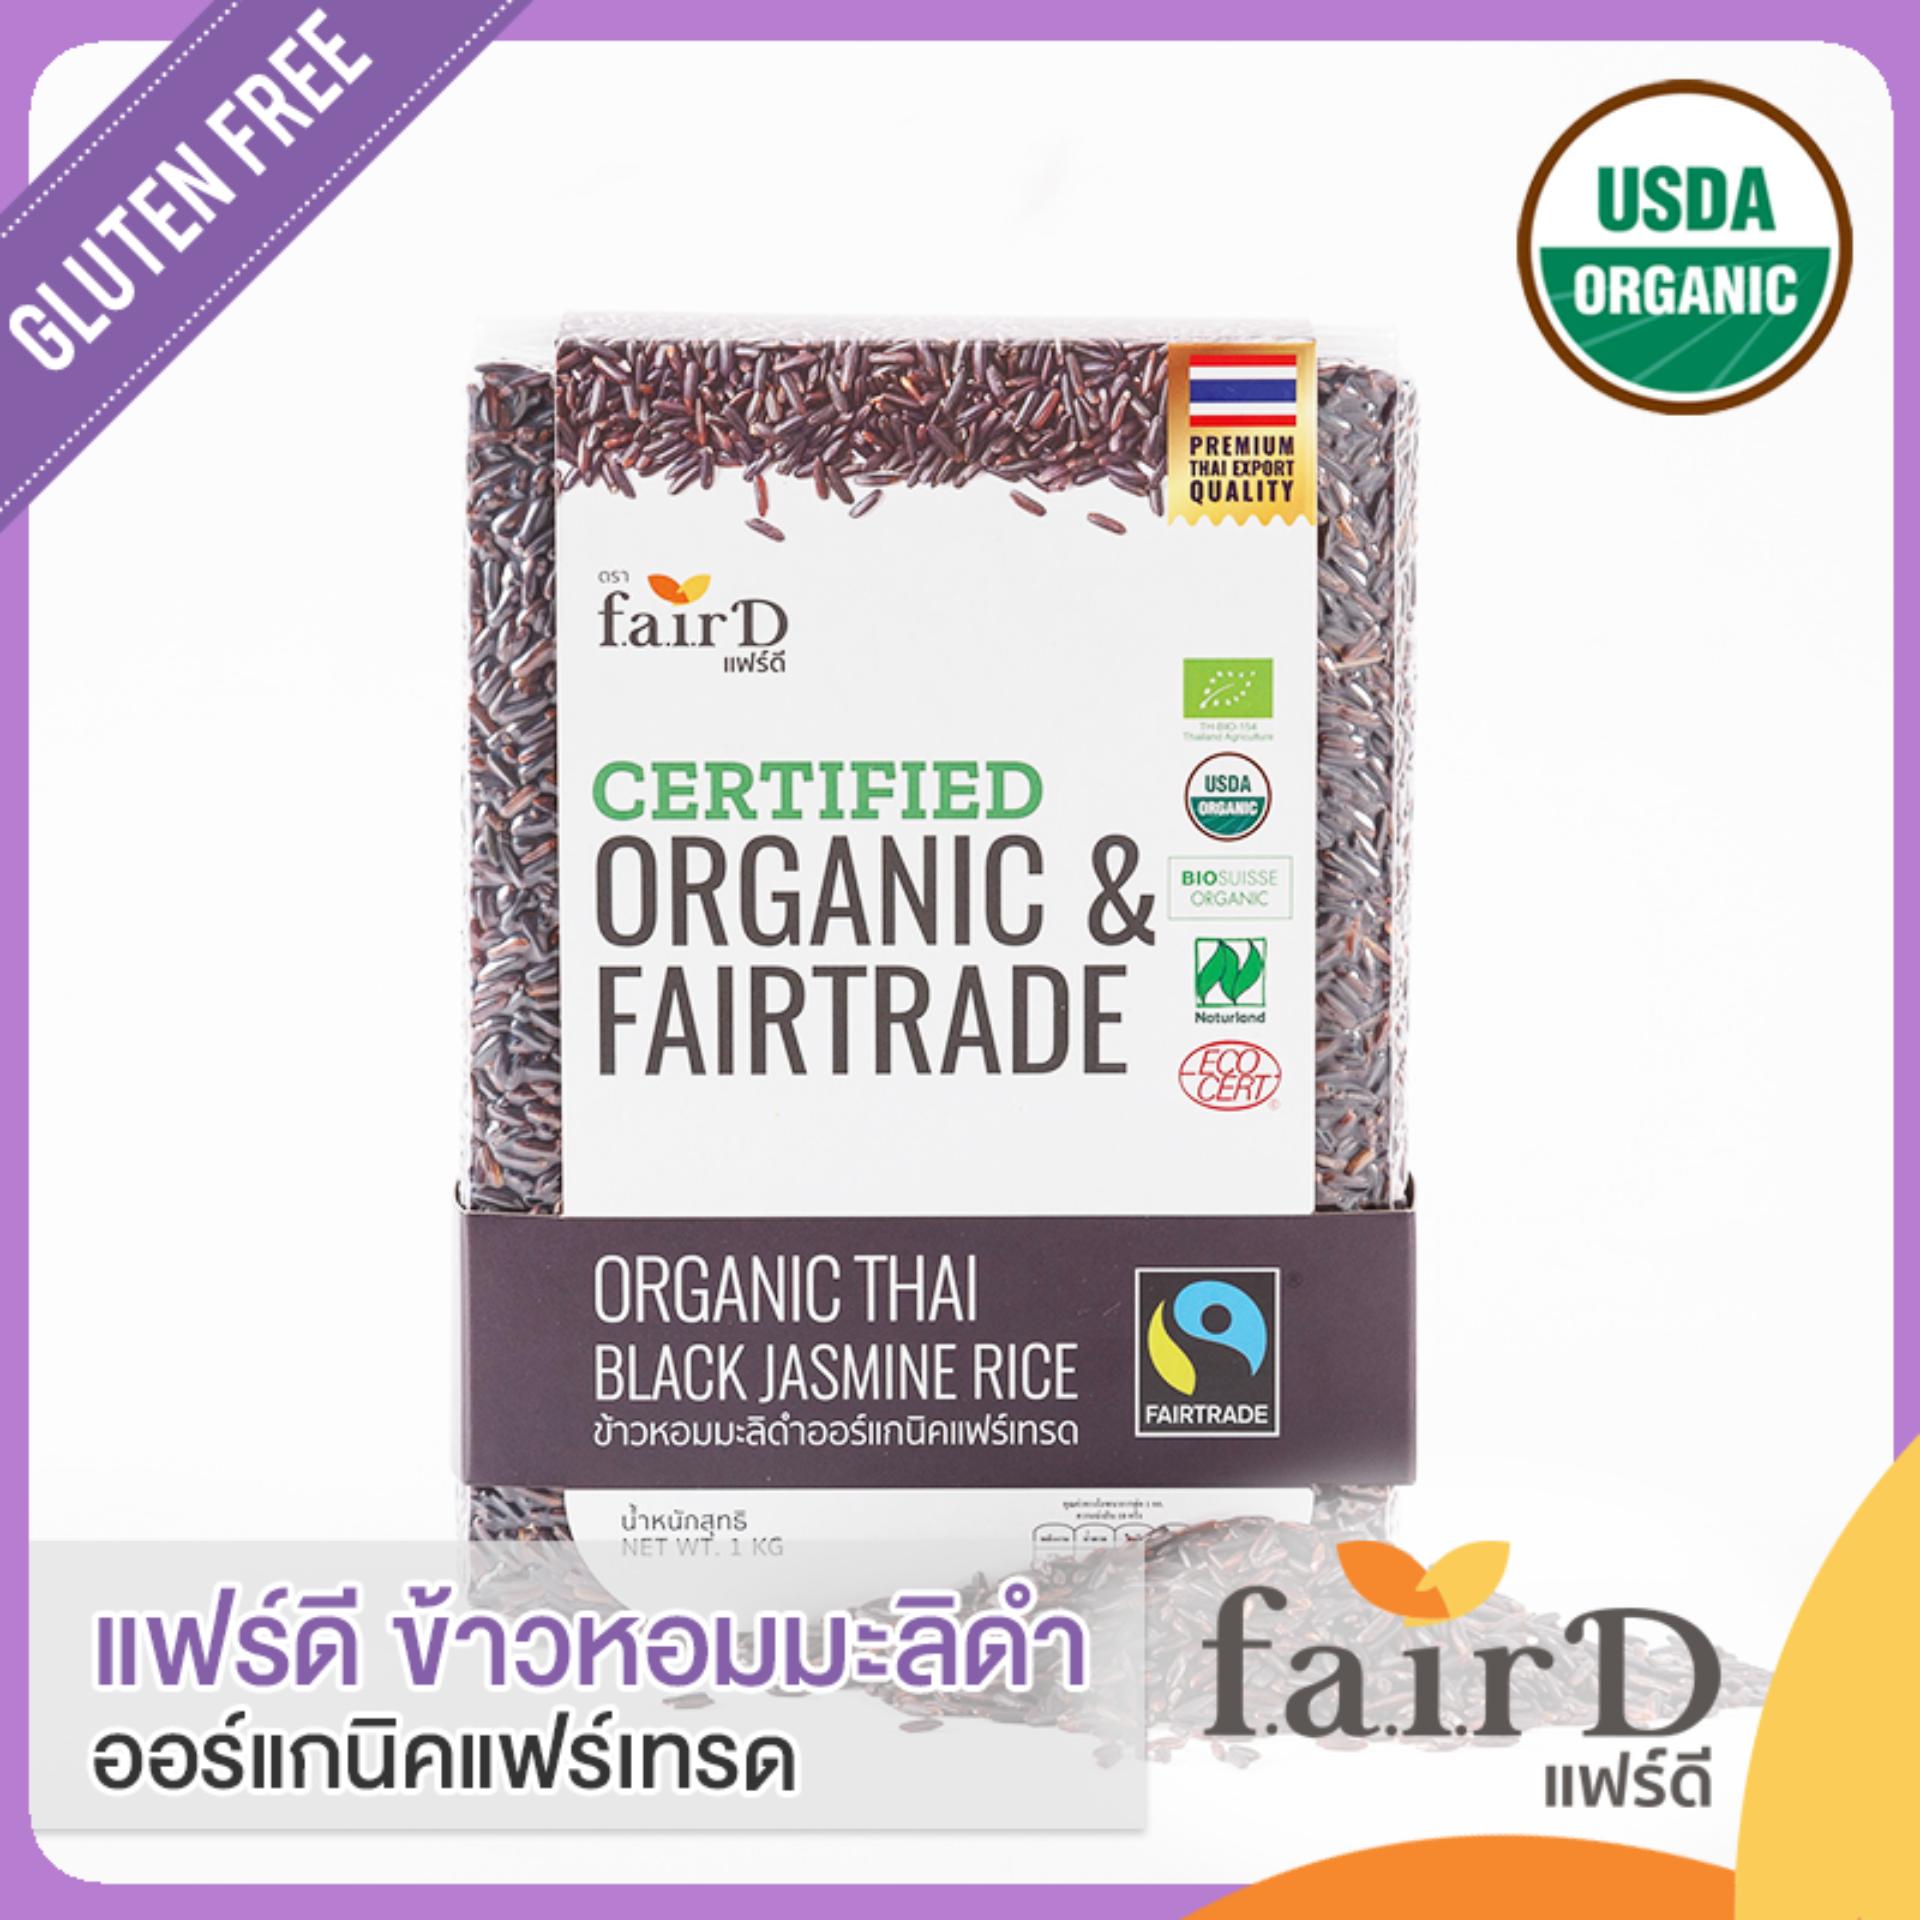 แฟร์ดี ข้าวหอมมะลิดำออร์แกนิคแฟร์เทรด 1 กก. (FairD Organic & Fairtrade Thai Black Jasmine Rice)